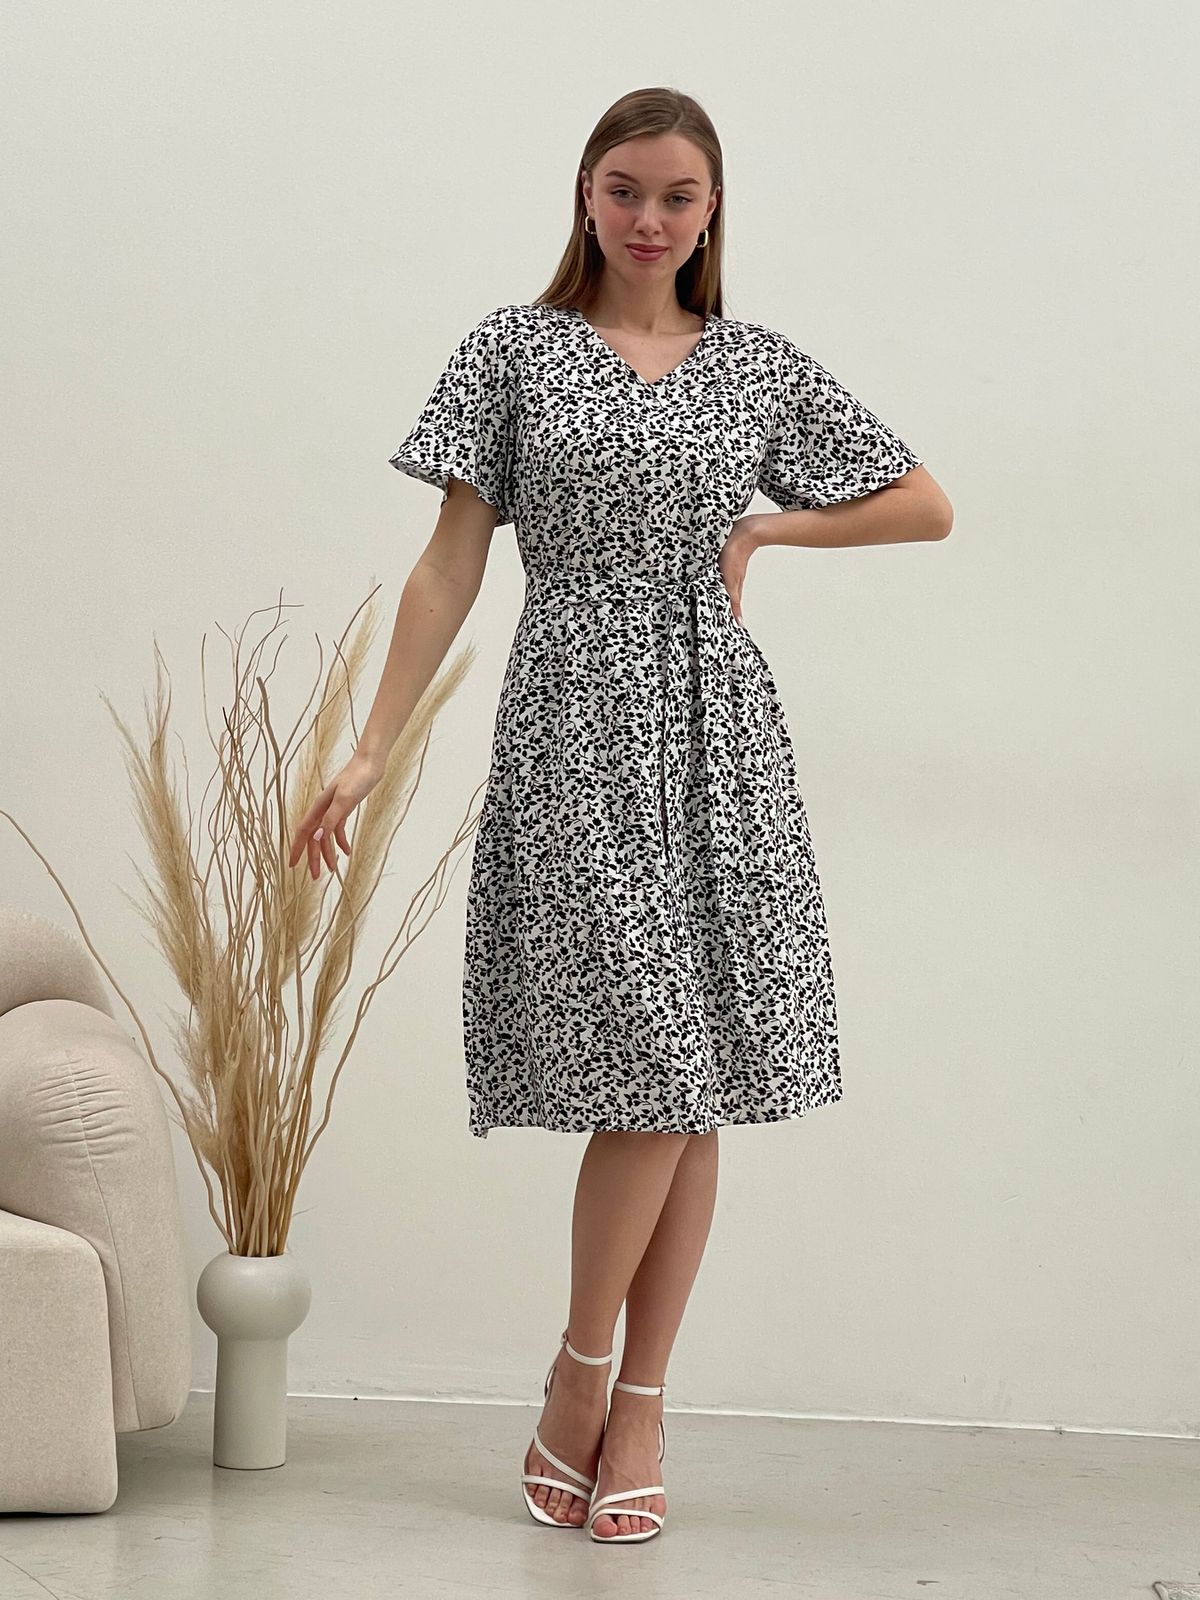 Купить Платье летнее ниже колен в цветочек белое Merlini Мискано 700001284 размер 42-44 (S-M) в интернет-магазине